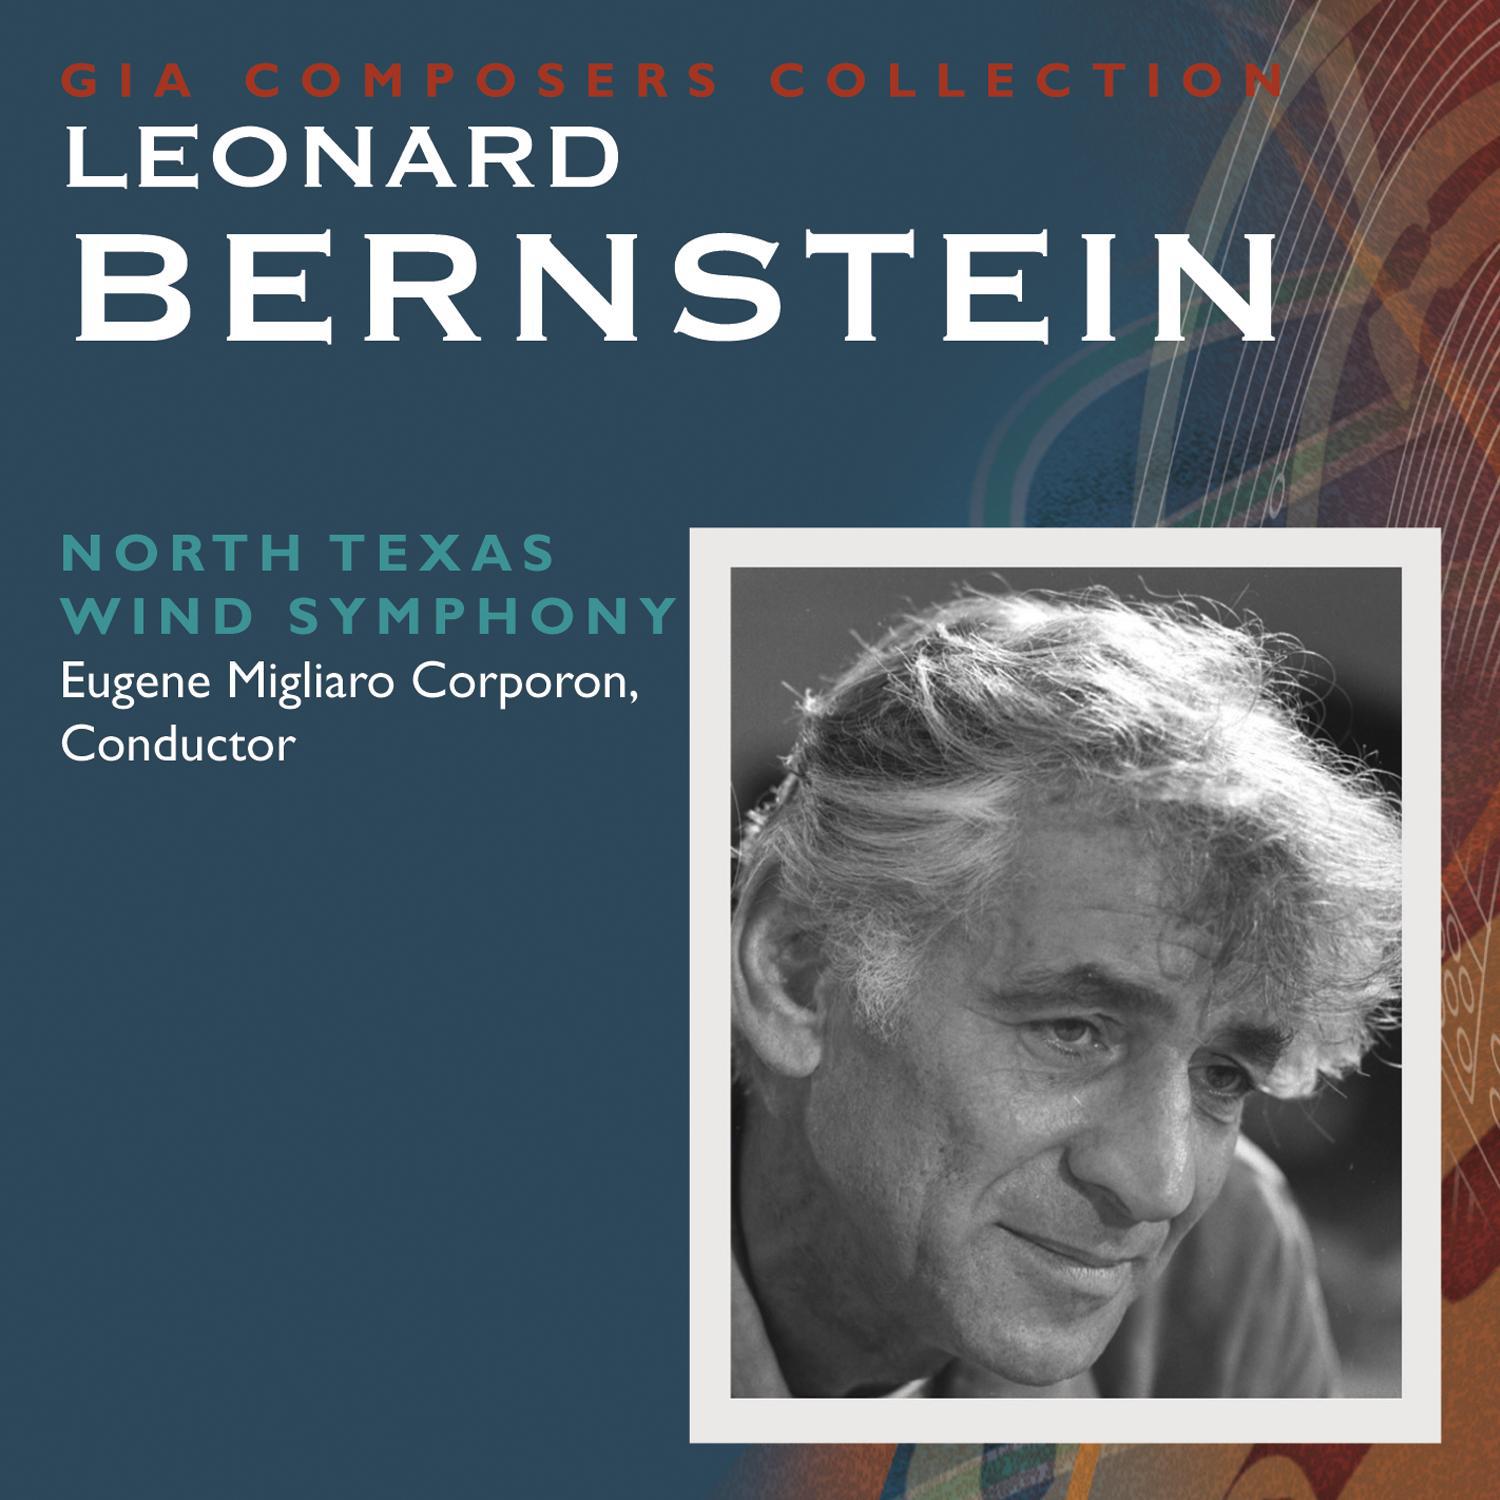 Composer's Collection: Leonard Bernstein专辑